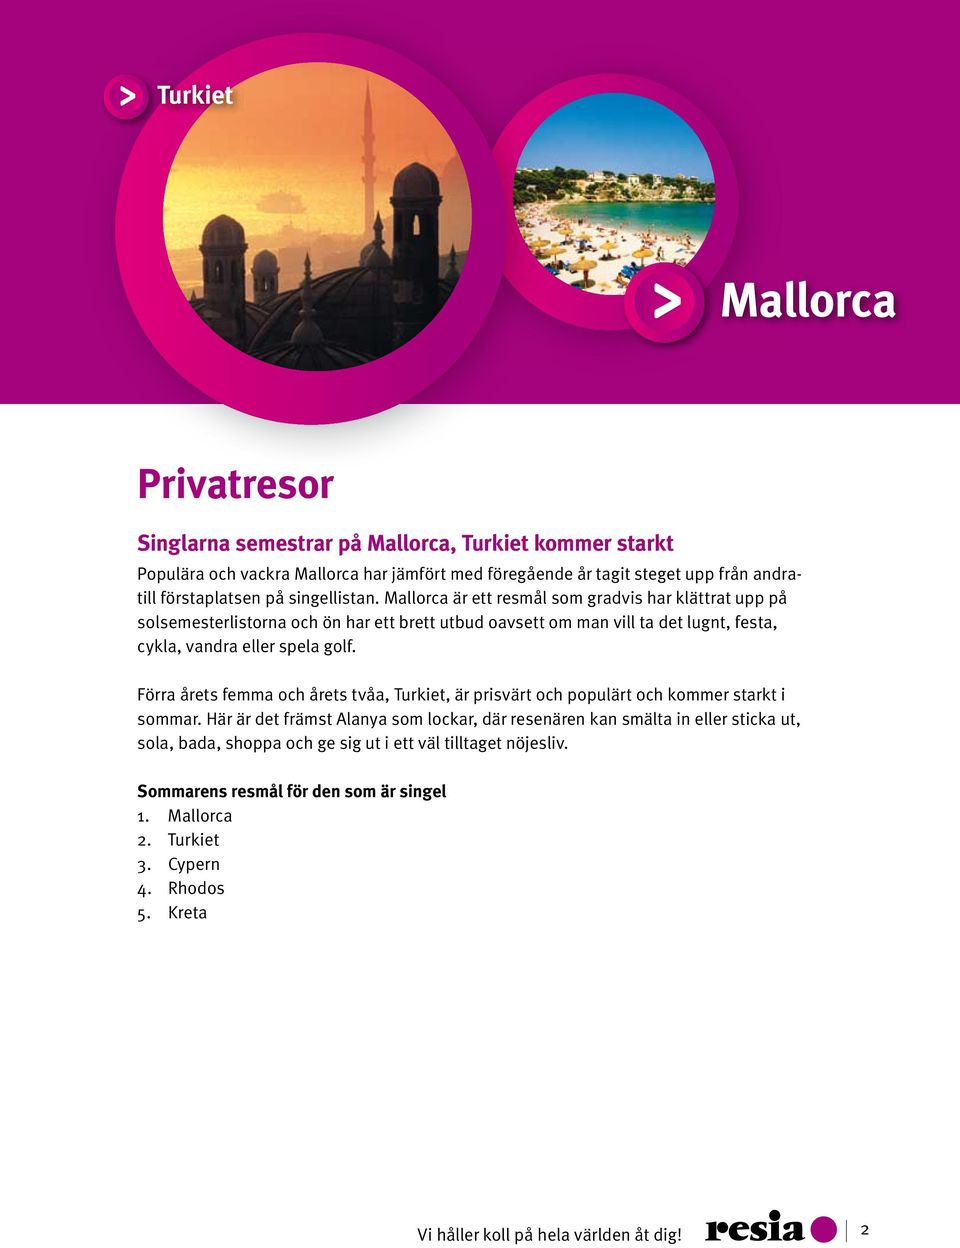 Mallorca är ett resmål som gradvis har klättrat upp på solsemesterlistorna och ön har ett brett utbud oavsett om man vill ta det lugnt, festa, cykla, vandra eller spela golf.